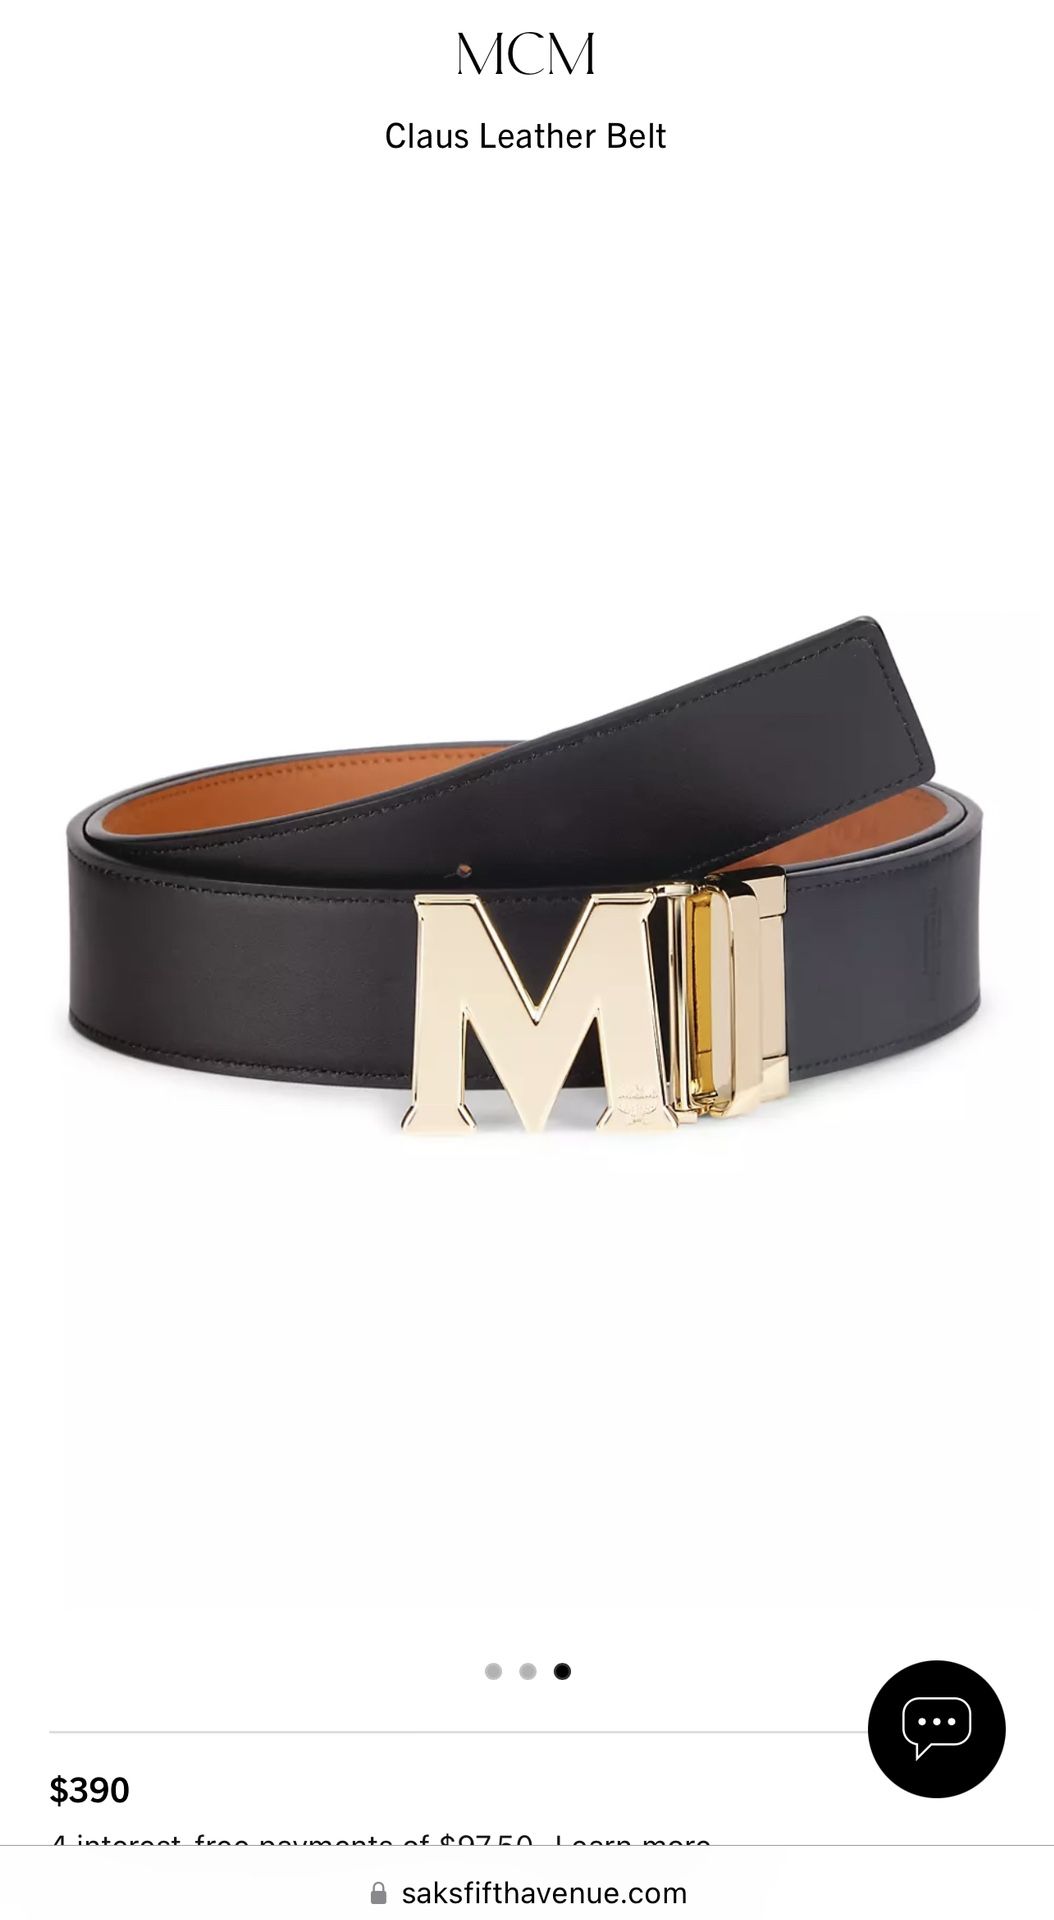 Authentic MCM belts